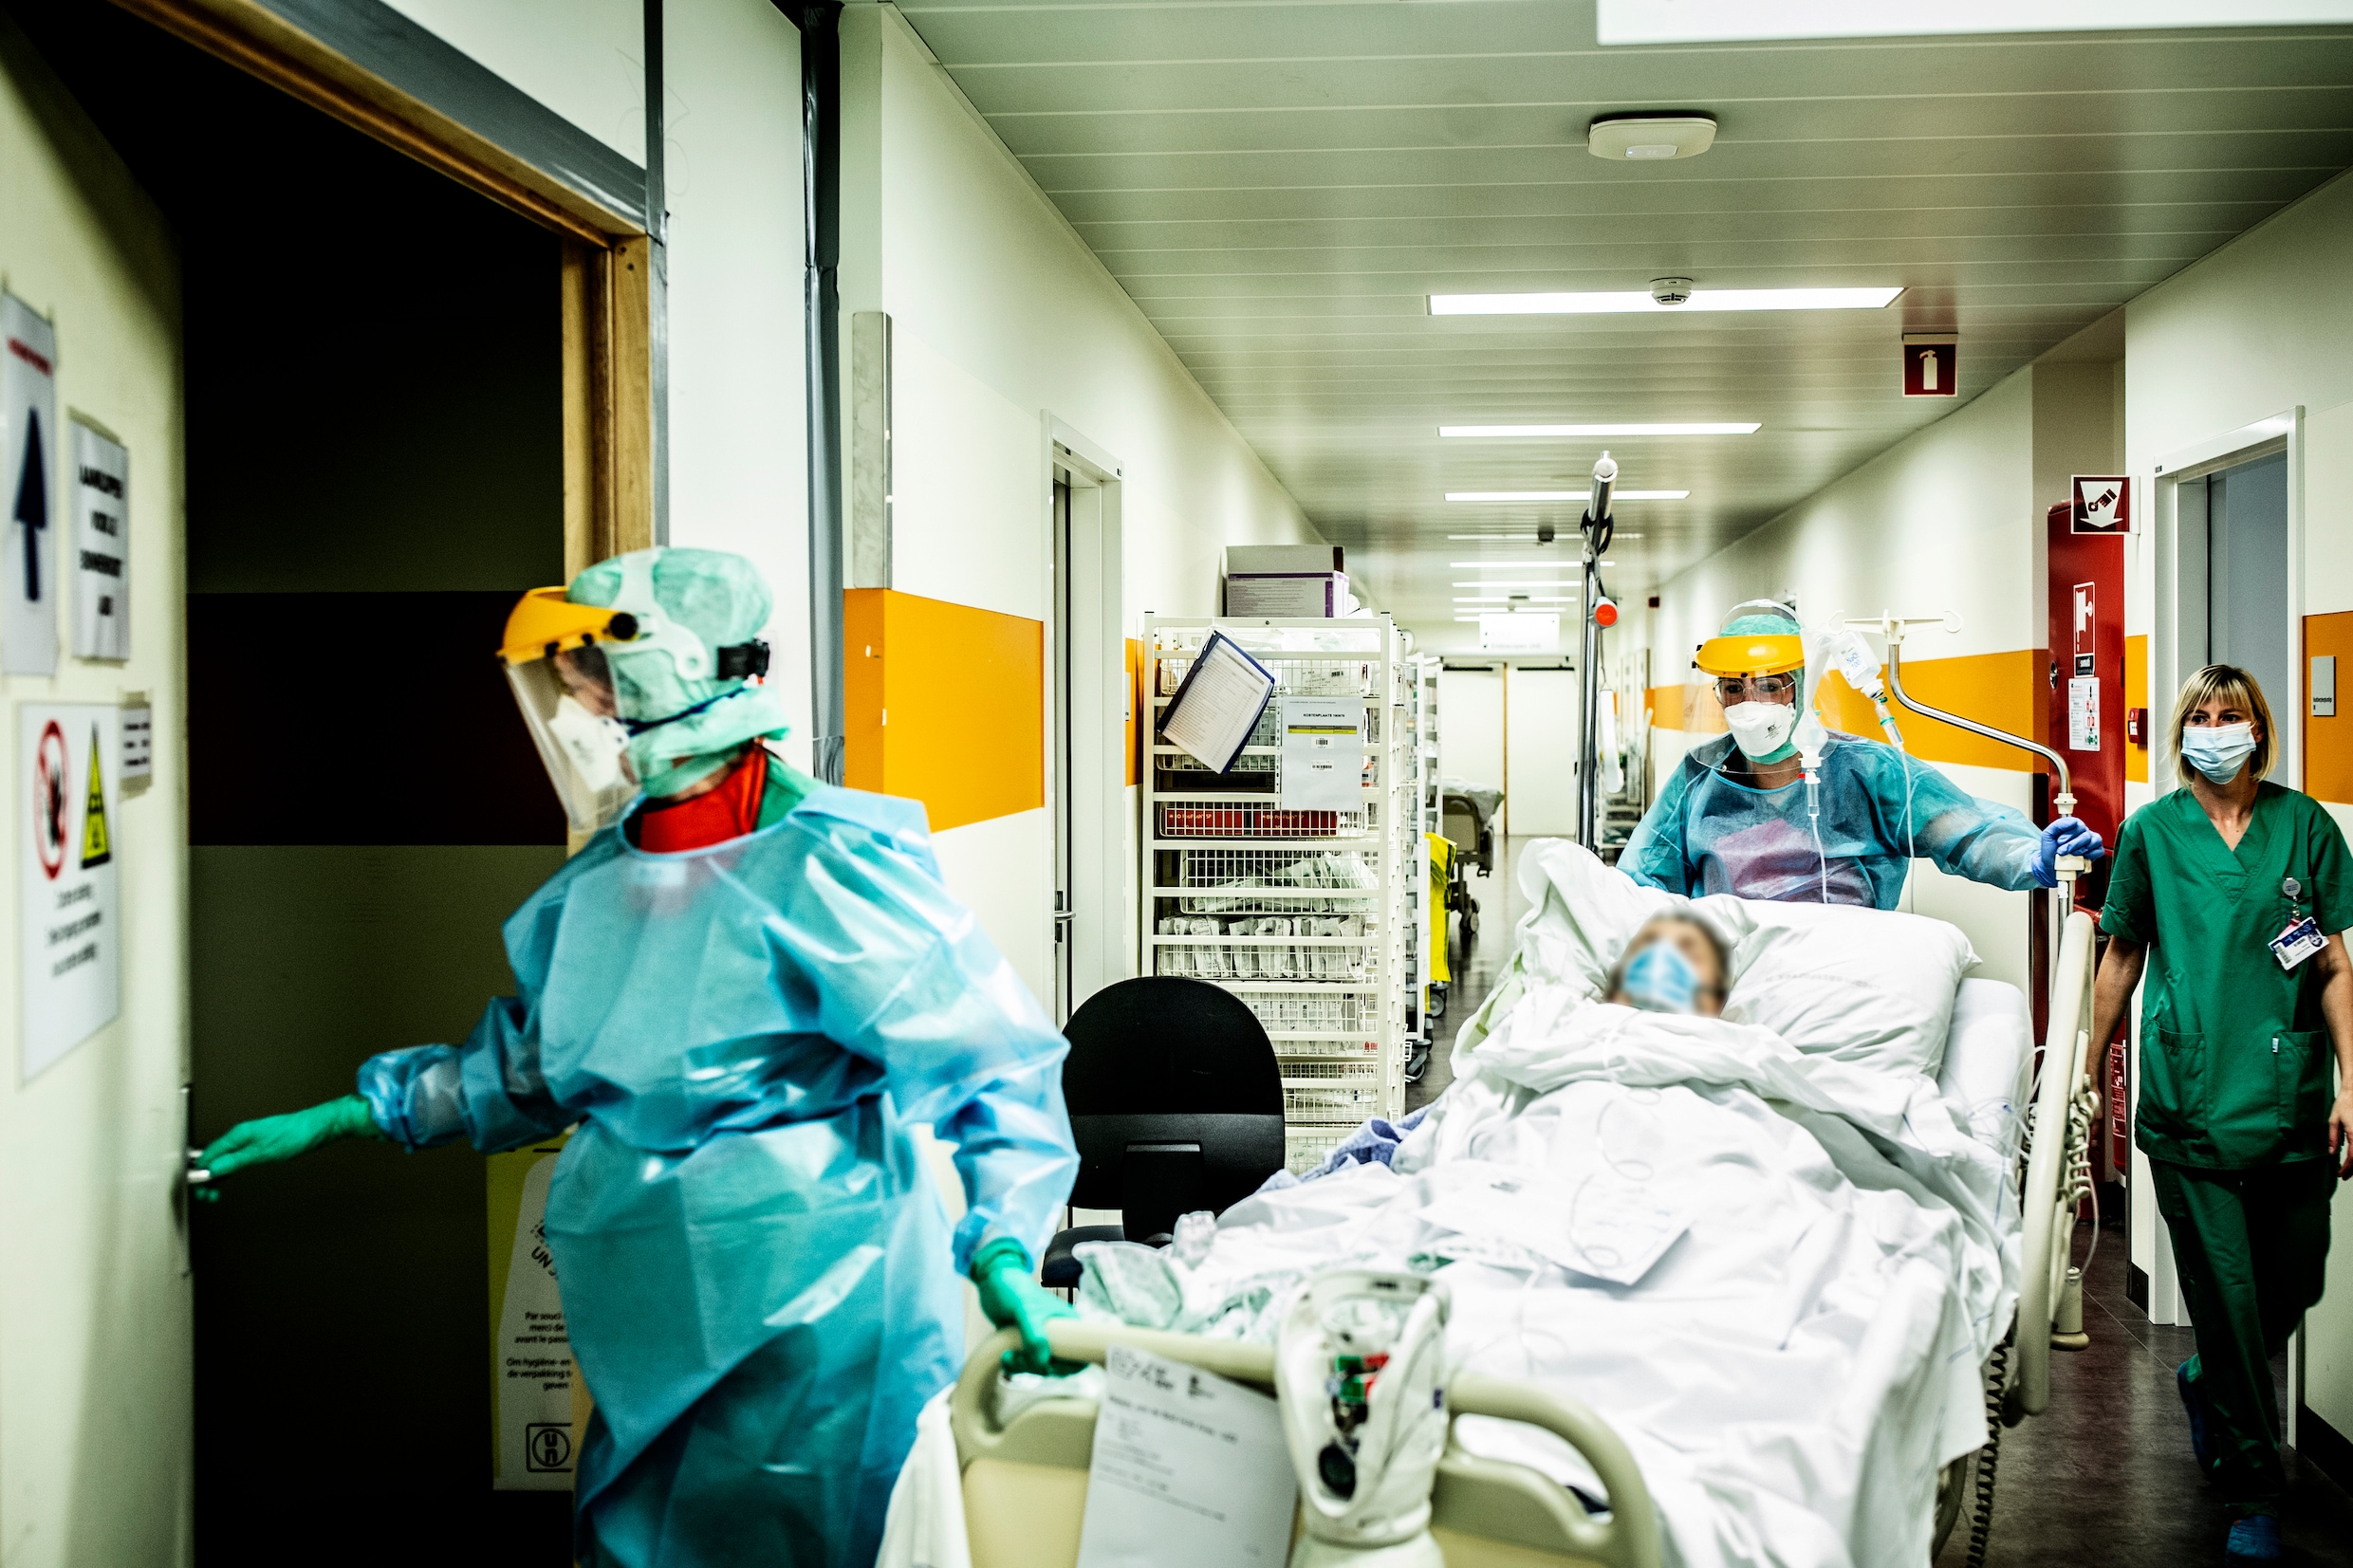 Opnieuw meer dan 300 coronapatiënten in ziekenhuizen in ons land: cijfers blijven stijgen